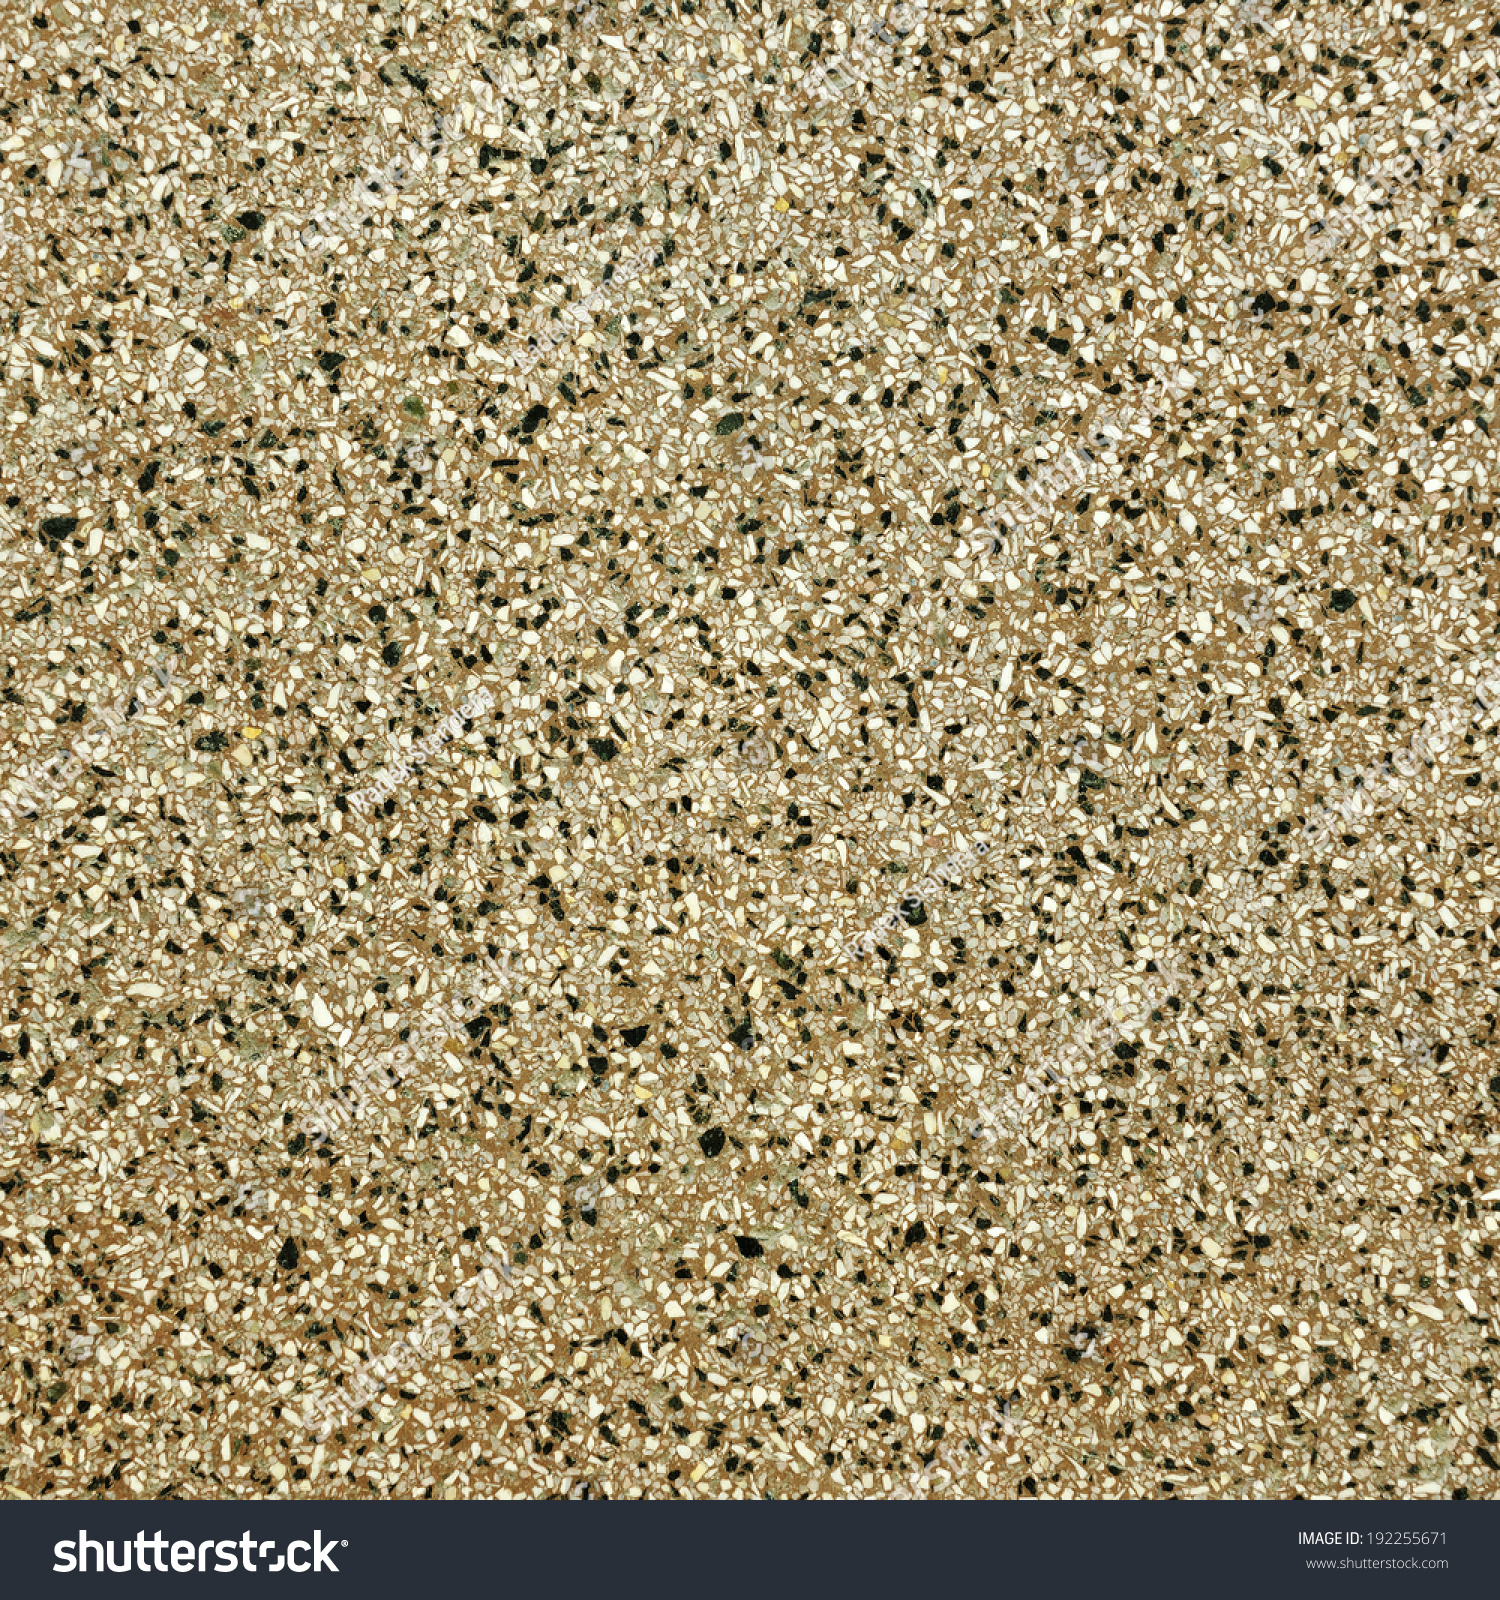 Texture Of Granite Floor Stock Photo 192255671 : Shutterstock